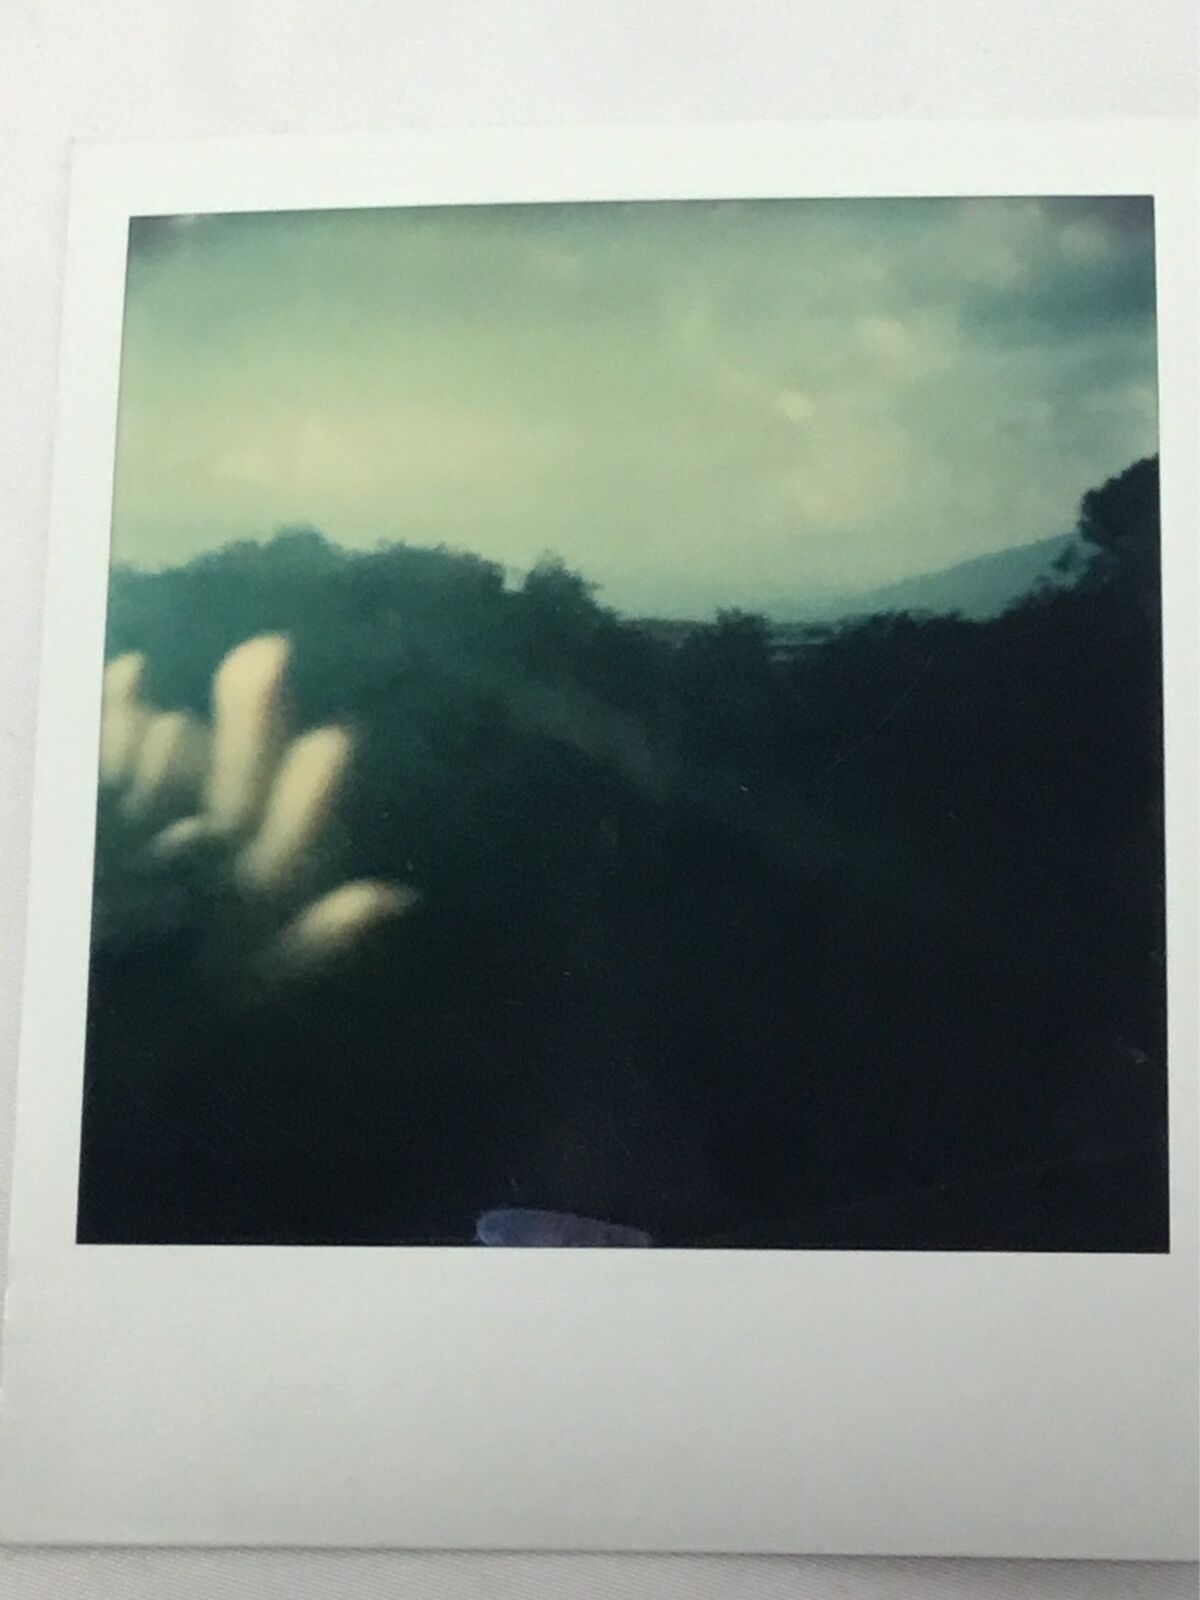 Vtg Polaroid Photo Odd Hands Trees Blurry Weird Landscape Found Art Snapshot